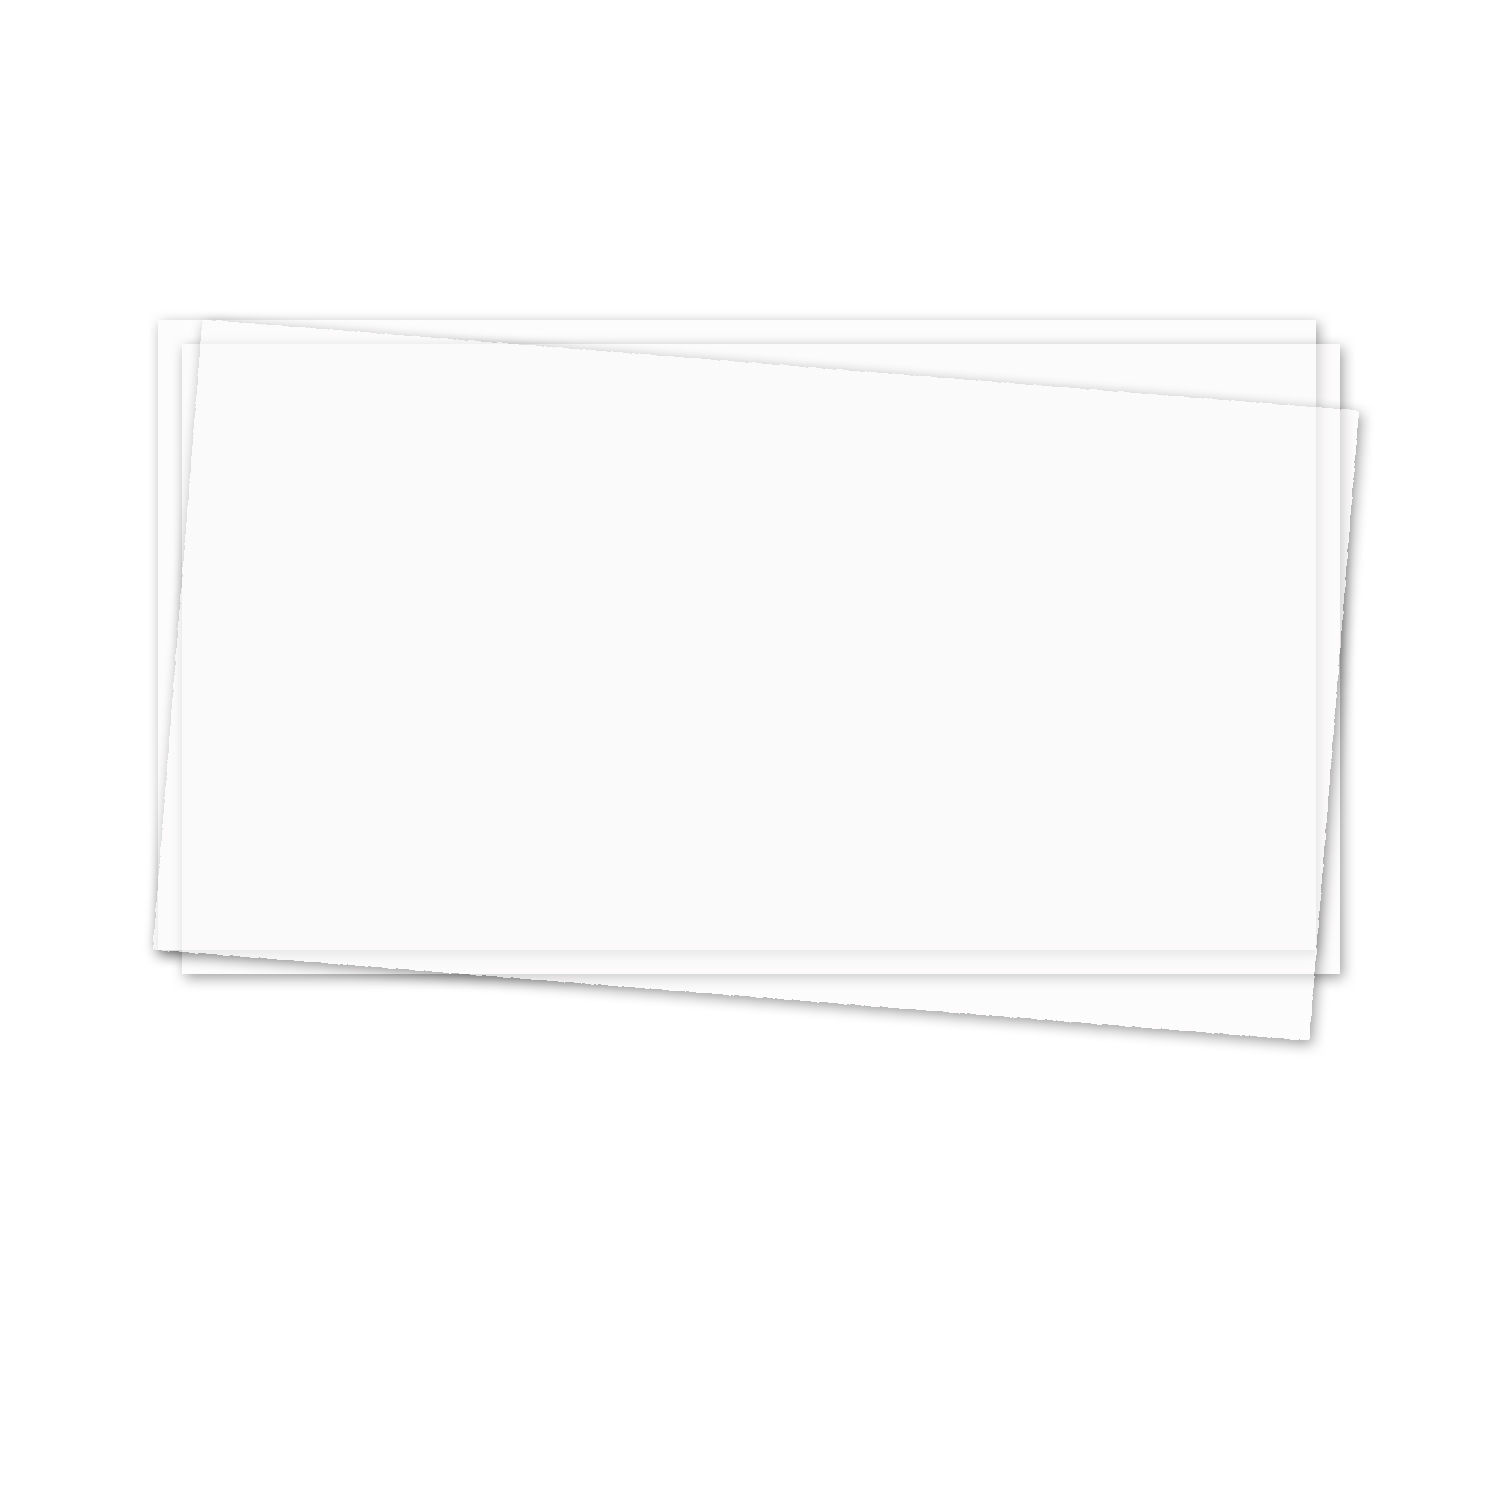 NEU Transparentpapier Extrastark 115g/qm, 50 x 61 cm, 1 Bogen, Weiß